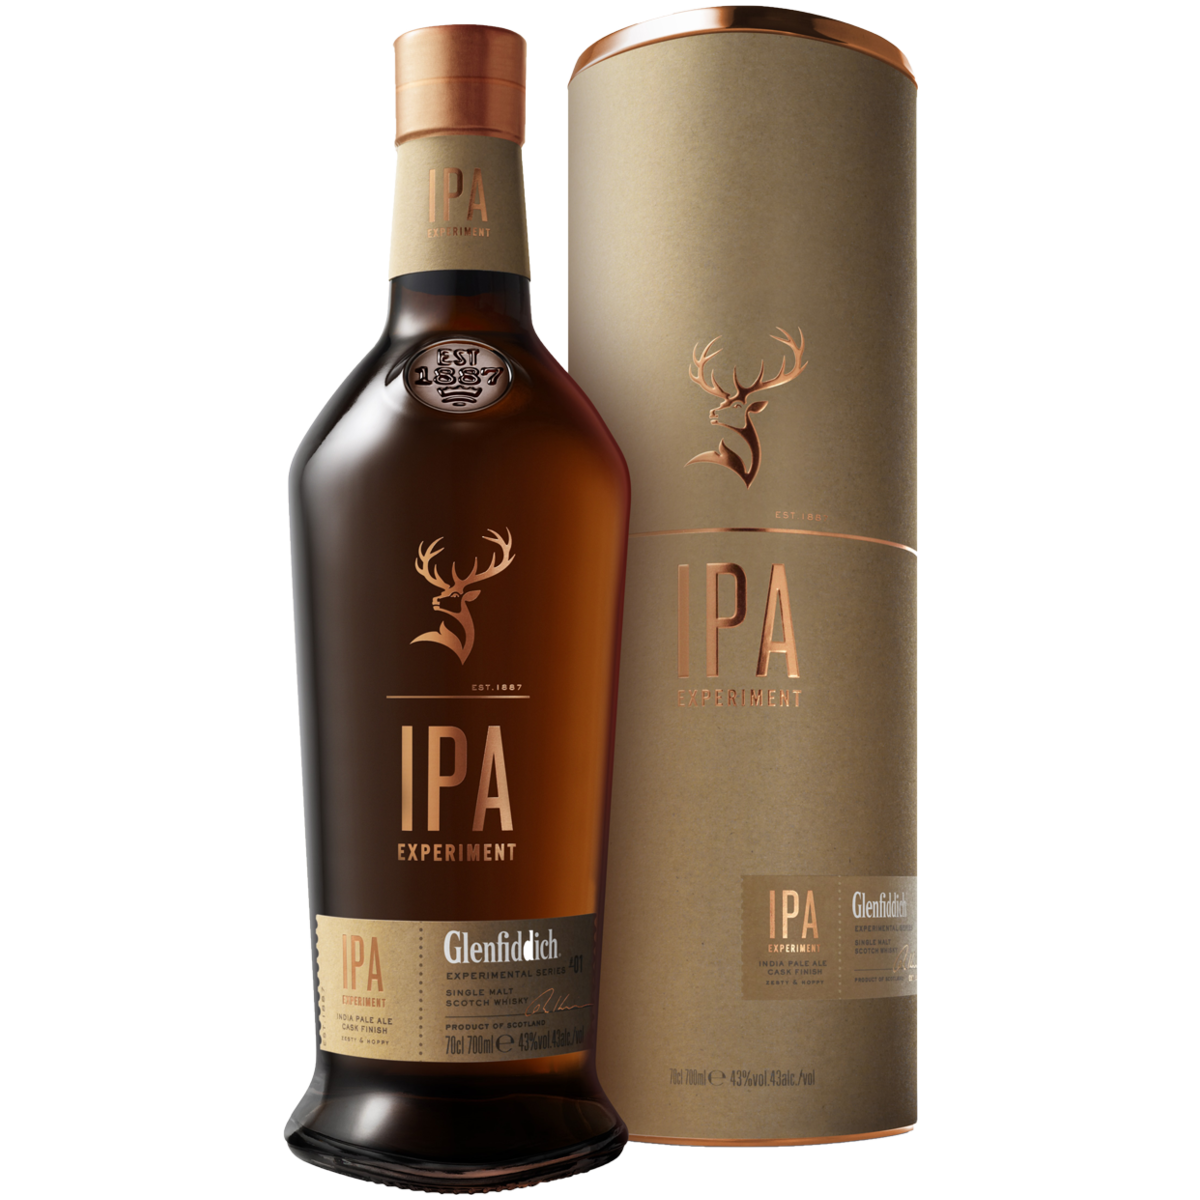 Виски Glenfiddich IPA 0,7 л в подарочной упаковке туба